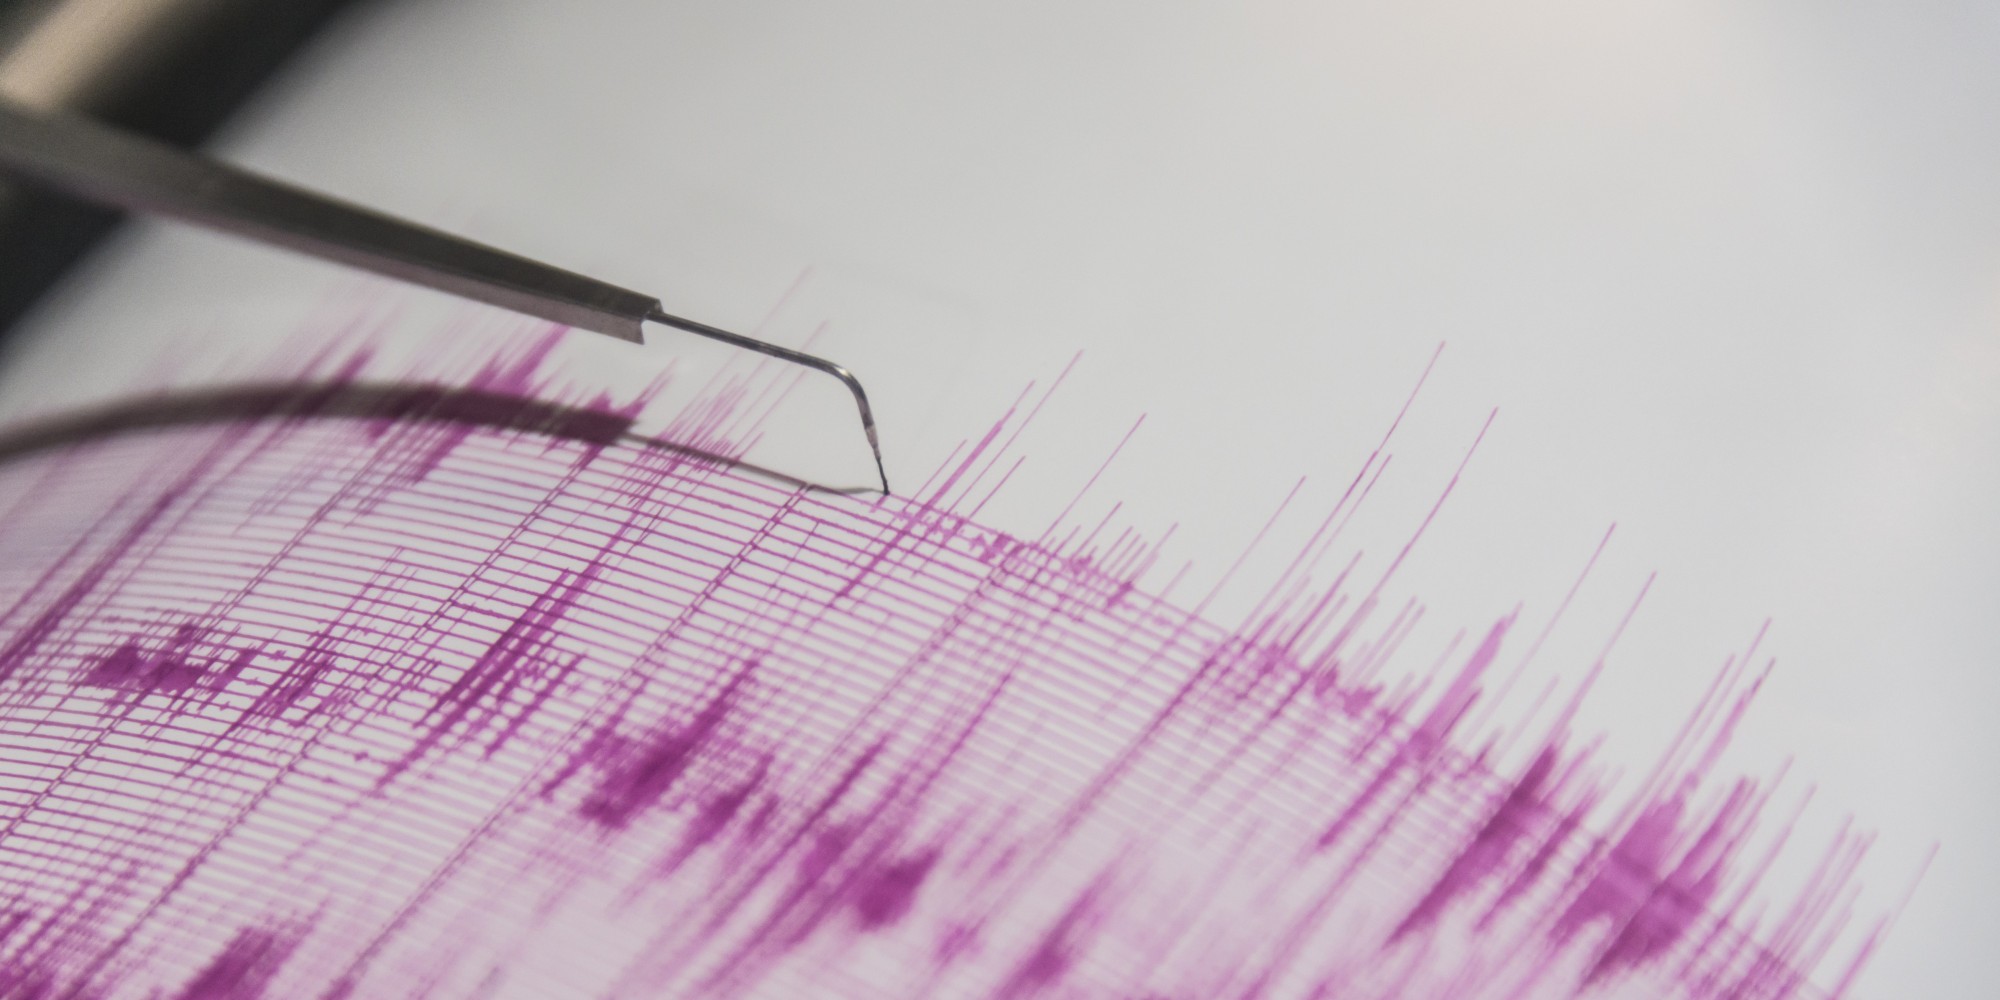 Σεισμός 3,3 Ρίχτερ «ξύπνησε» την Κάρπαθο (φώτο)